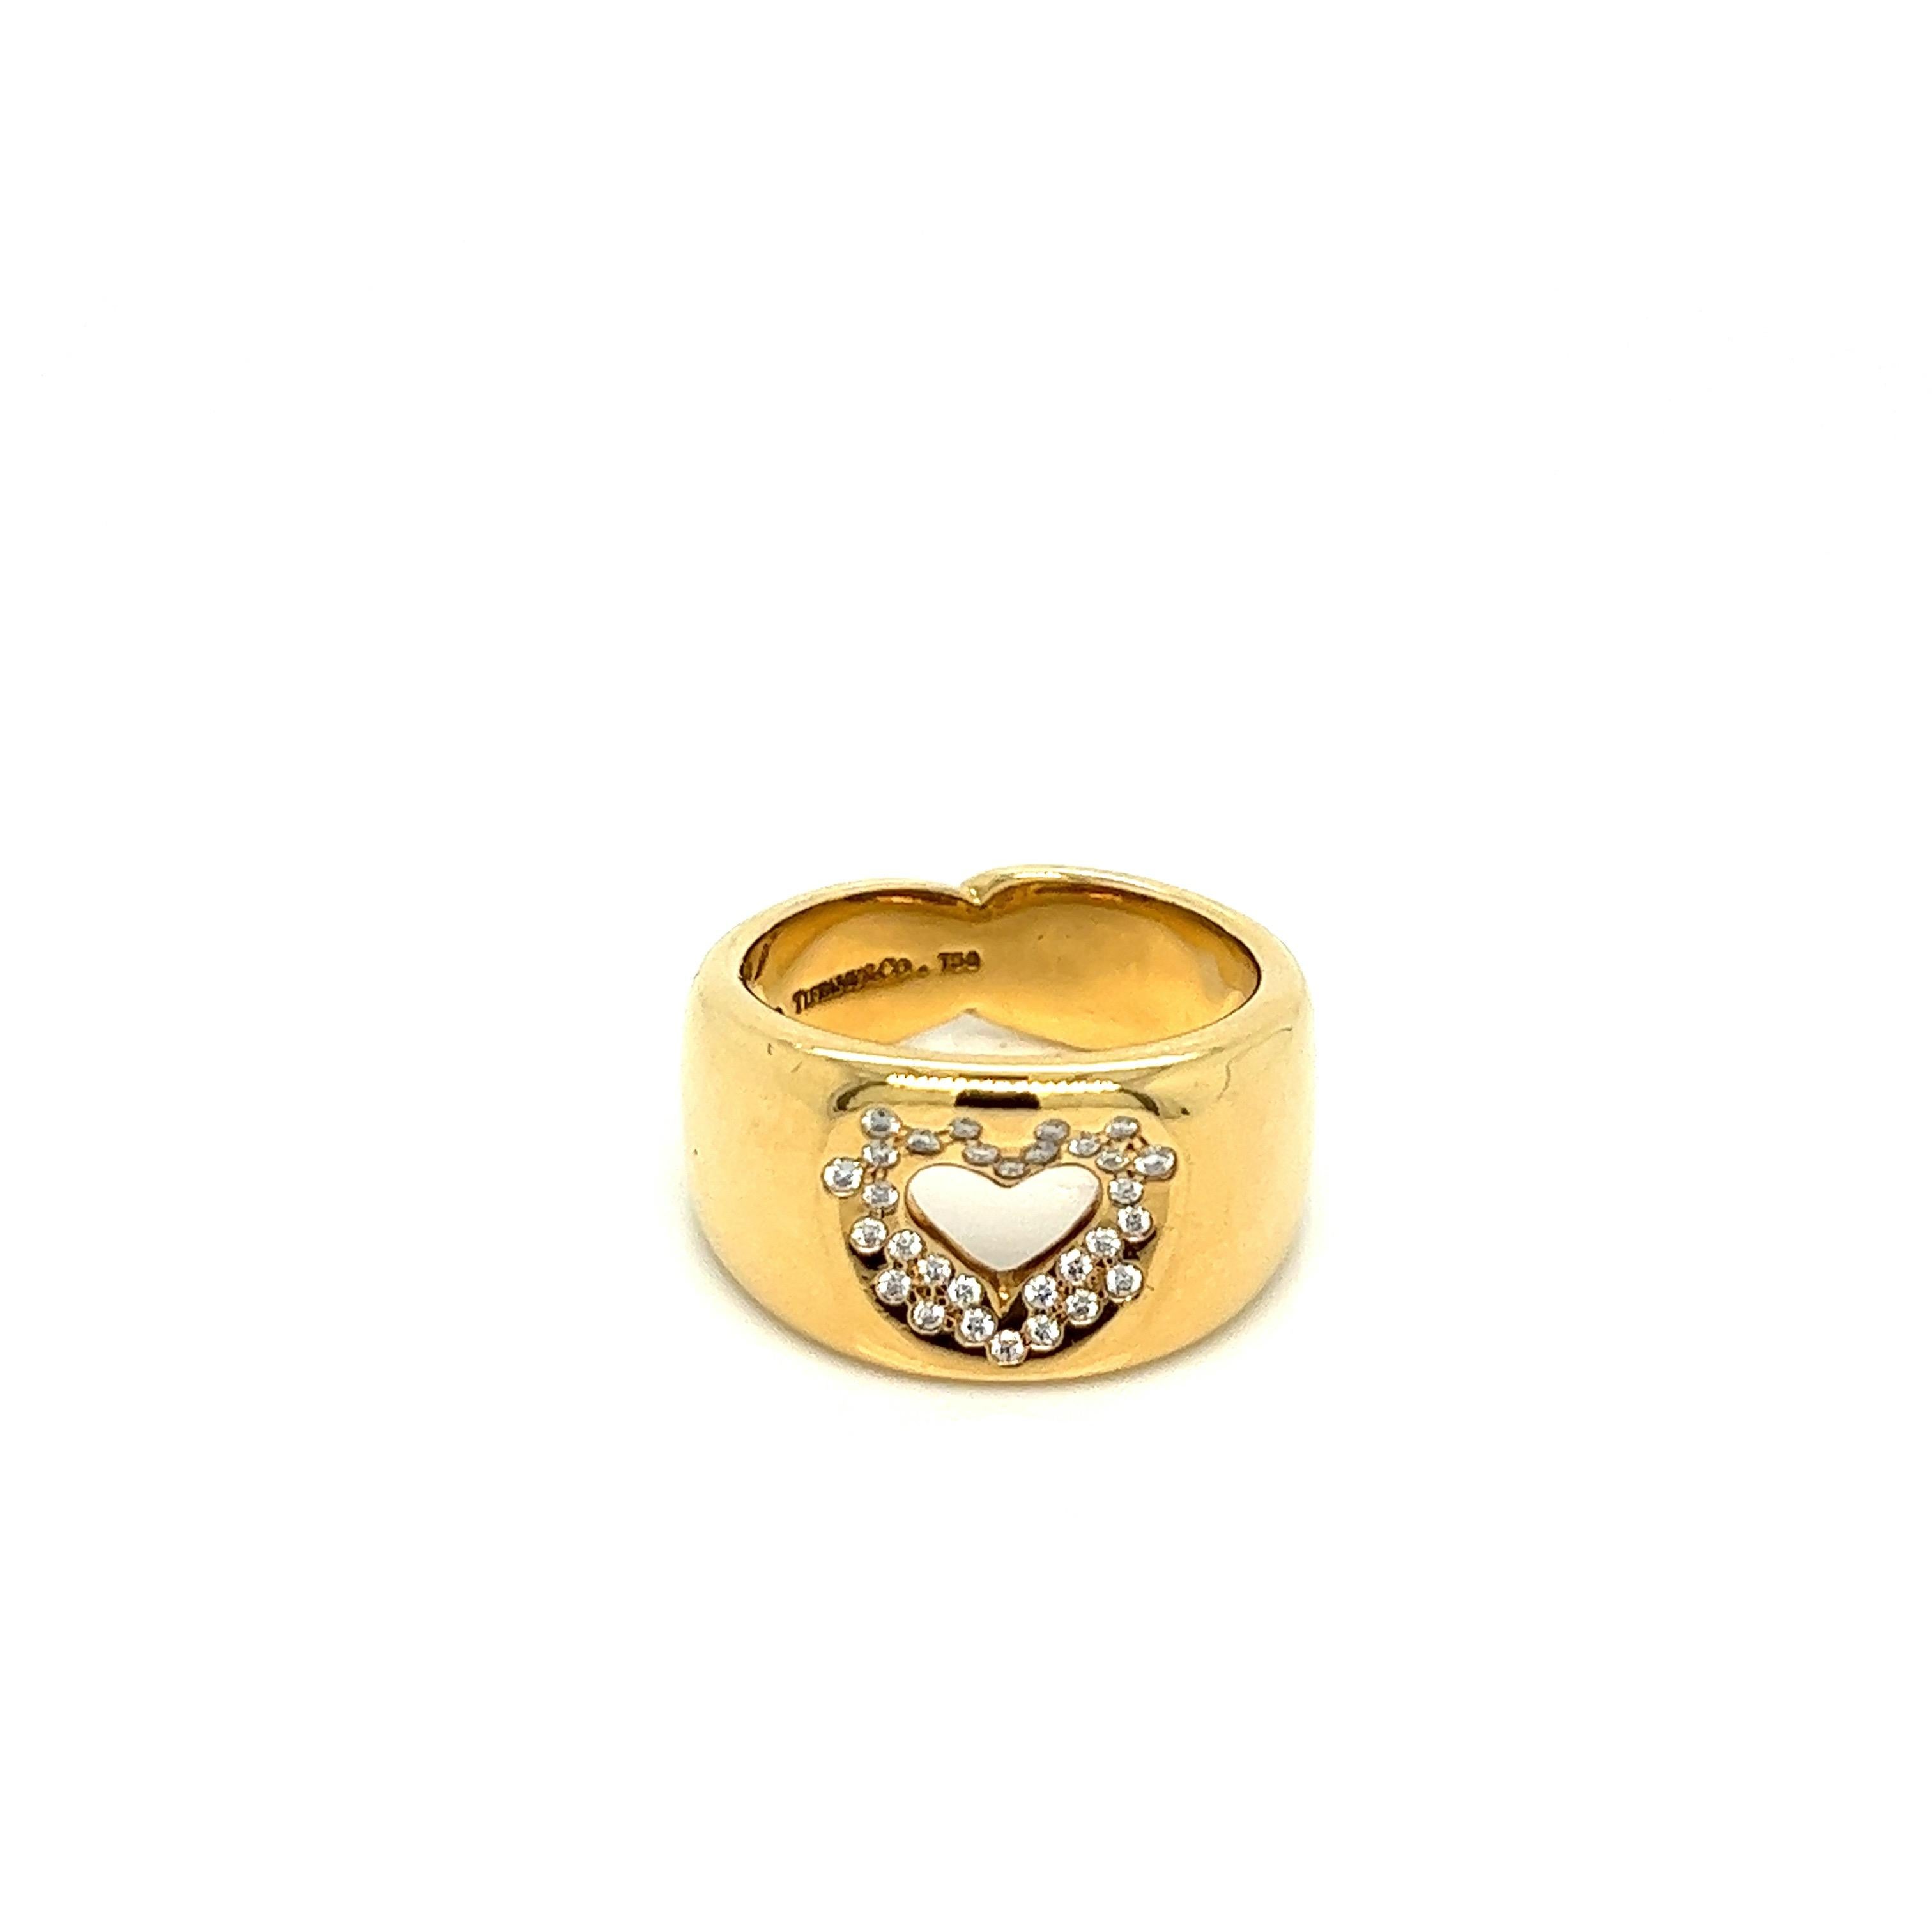 Tiffany & Co. Herz-Diamant-Goldring

Diamanten im Rundschliff von ca. 0,30 Karat, 18 Karat Gelbgold; markiert Tiffany & Co. 750

Größe: 6,75 US, Breite 11,5 mm
Gesamtgewicht: 13,7 Gramm